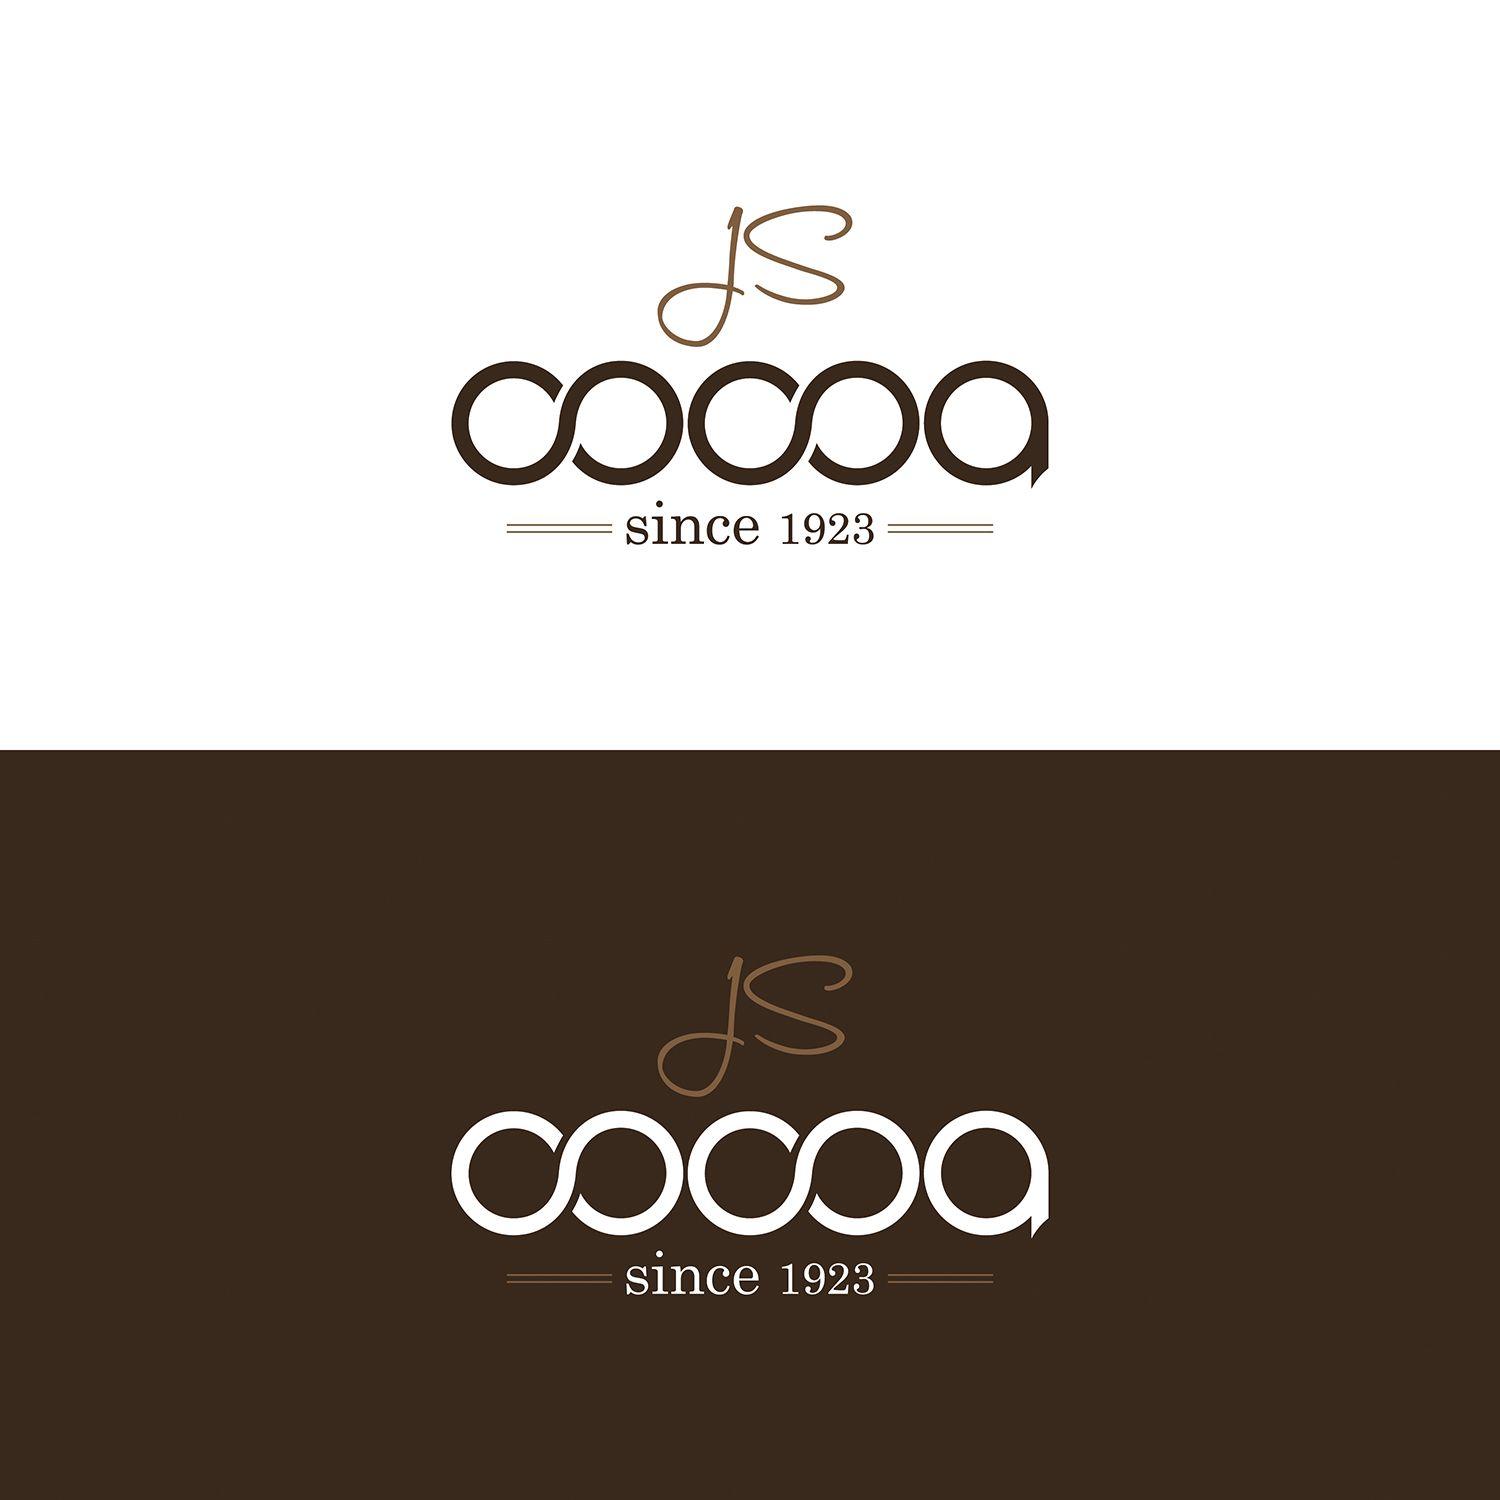 Cocoa Logo - Professional, Masculine, It Company Logo Design for J S Cocoa since ...